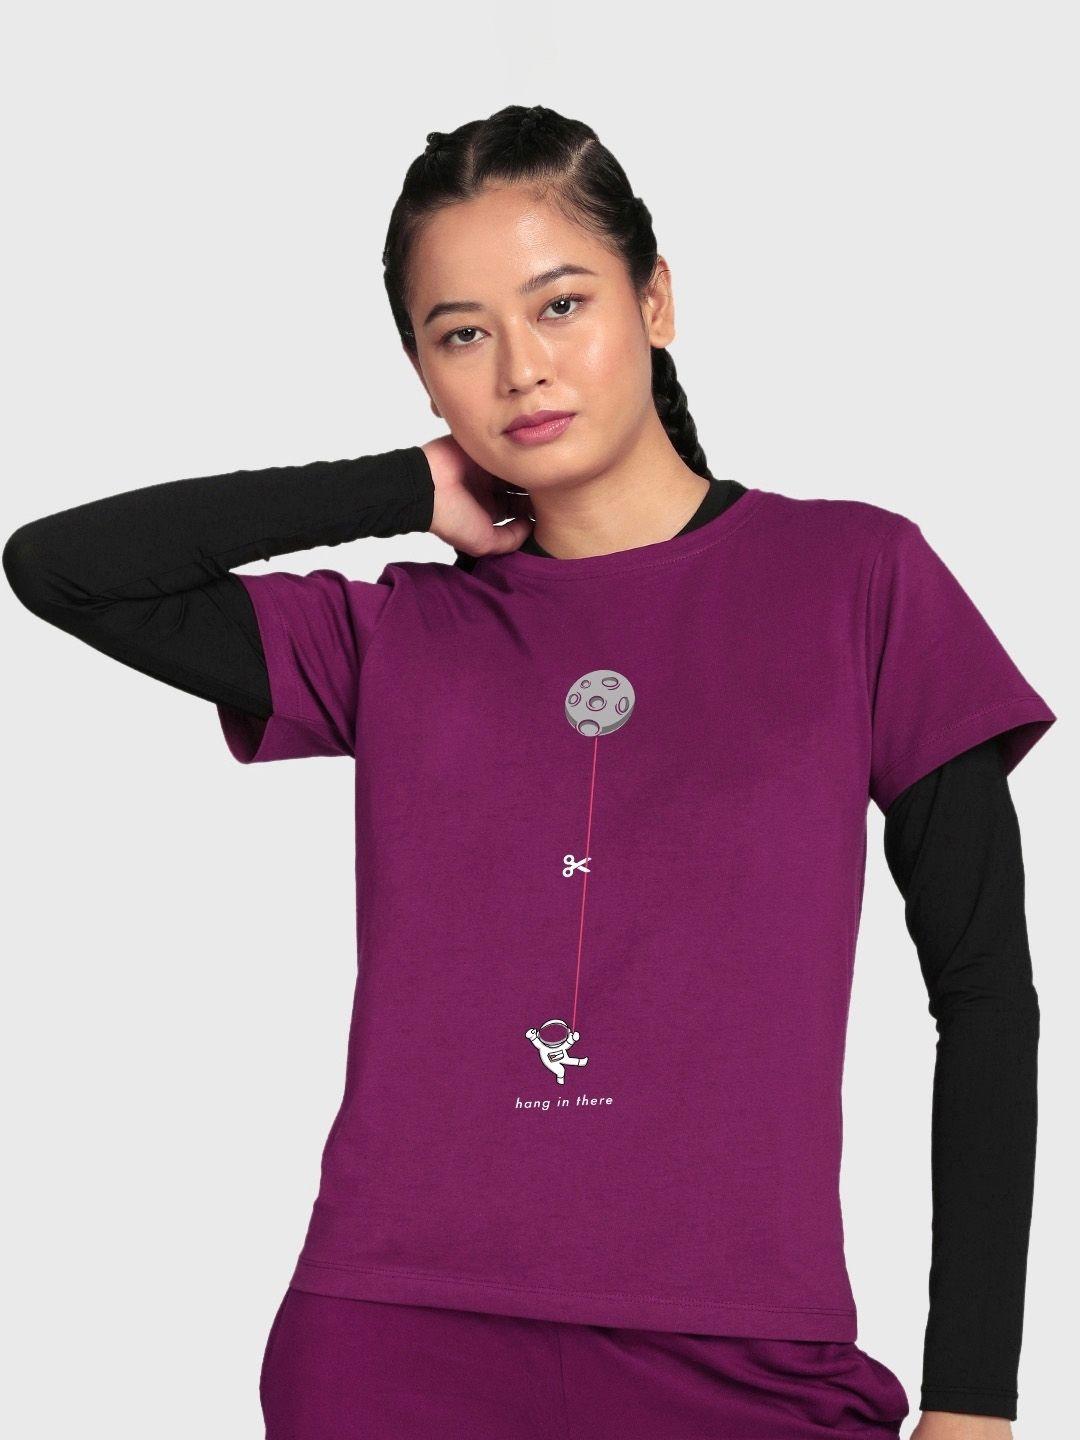 bewakoof-women-graphic-printed-cotton-sports-t-shirt